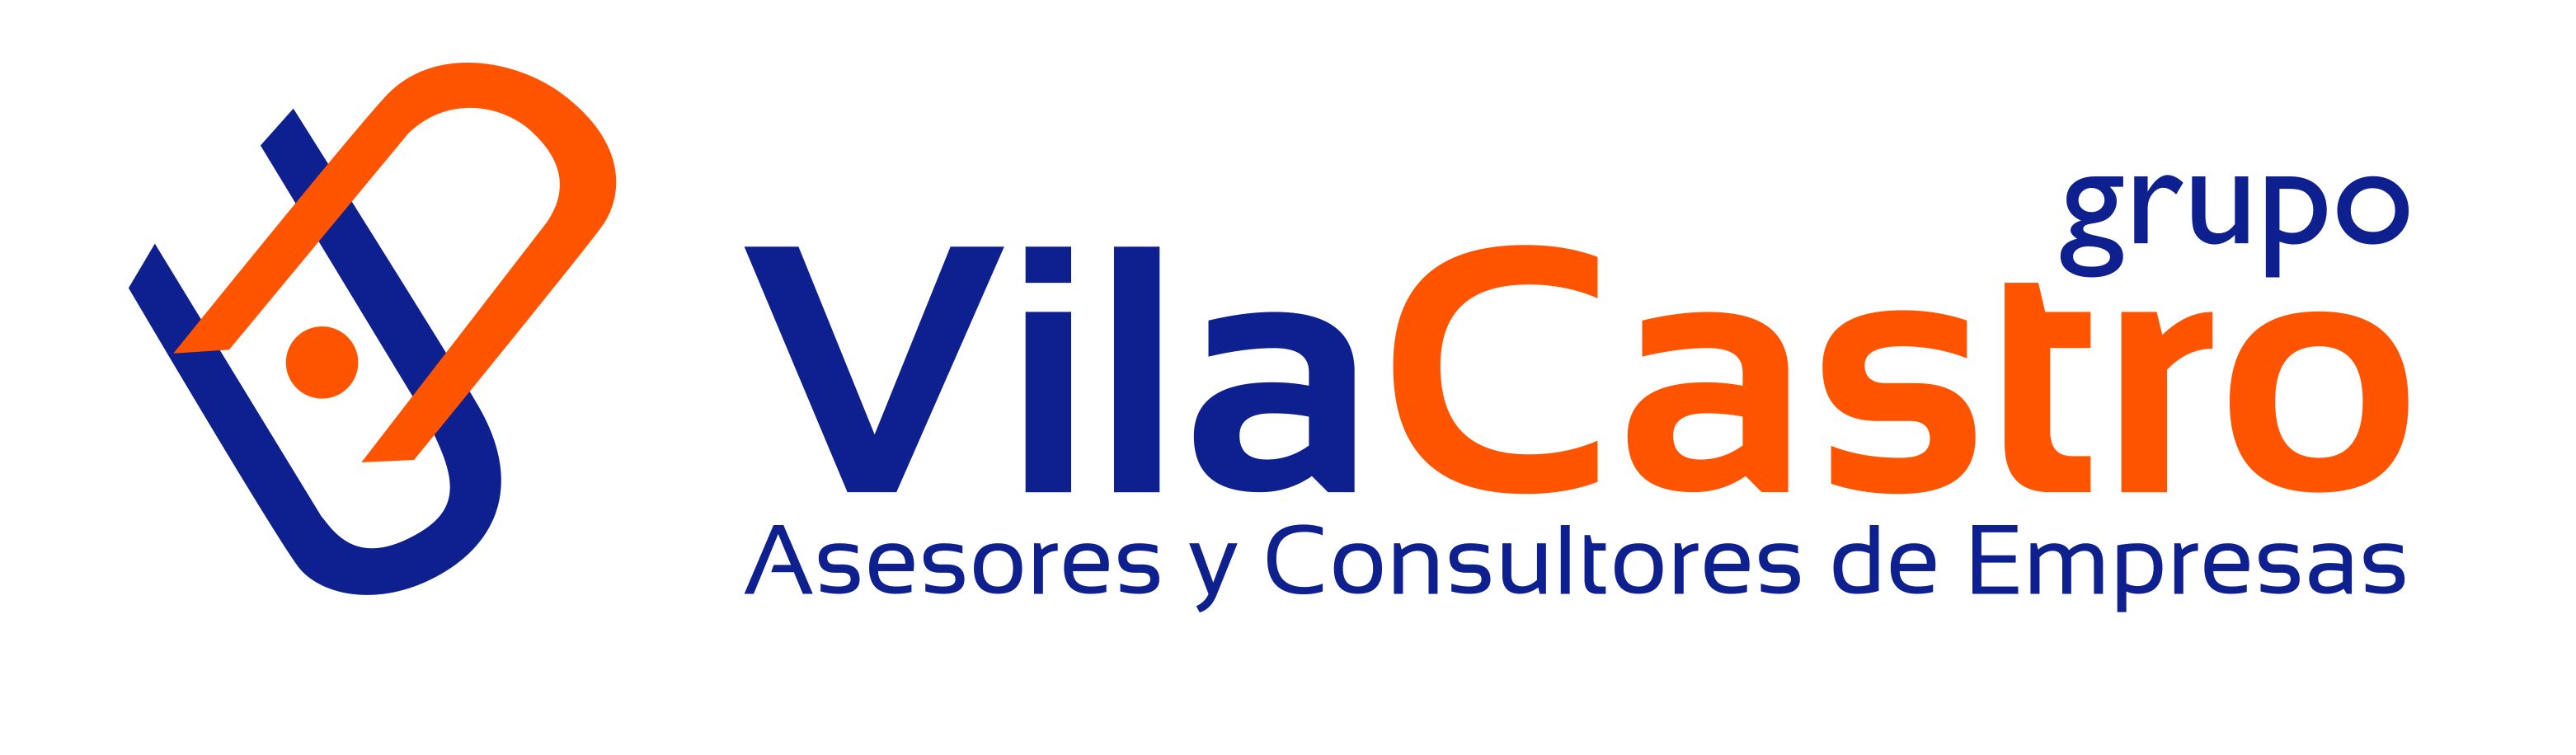 Vila Castro Grupo Asesor y Consultor en Portugal